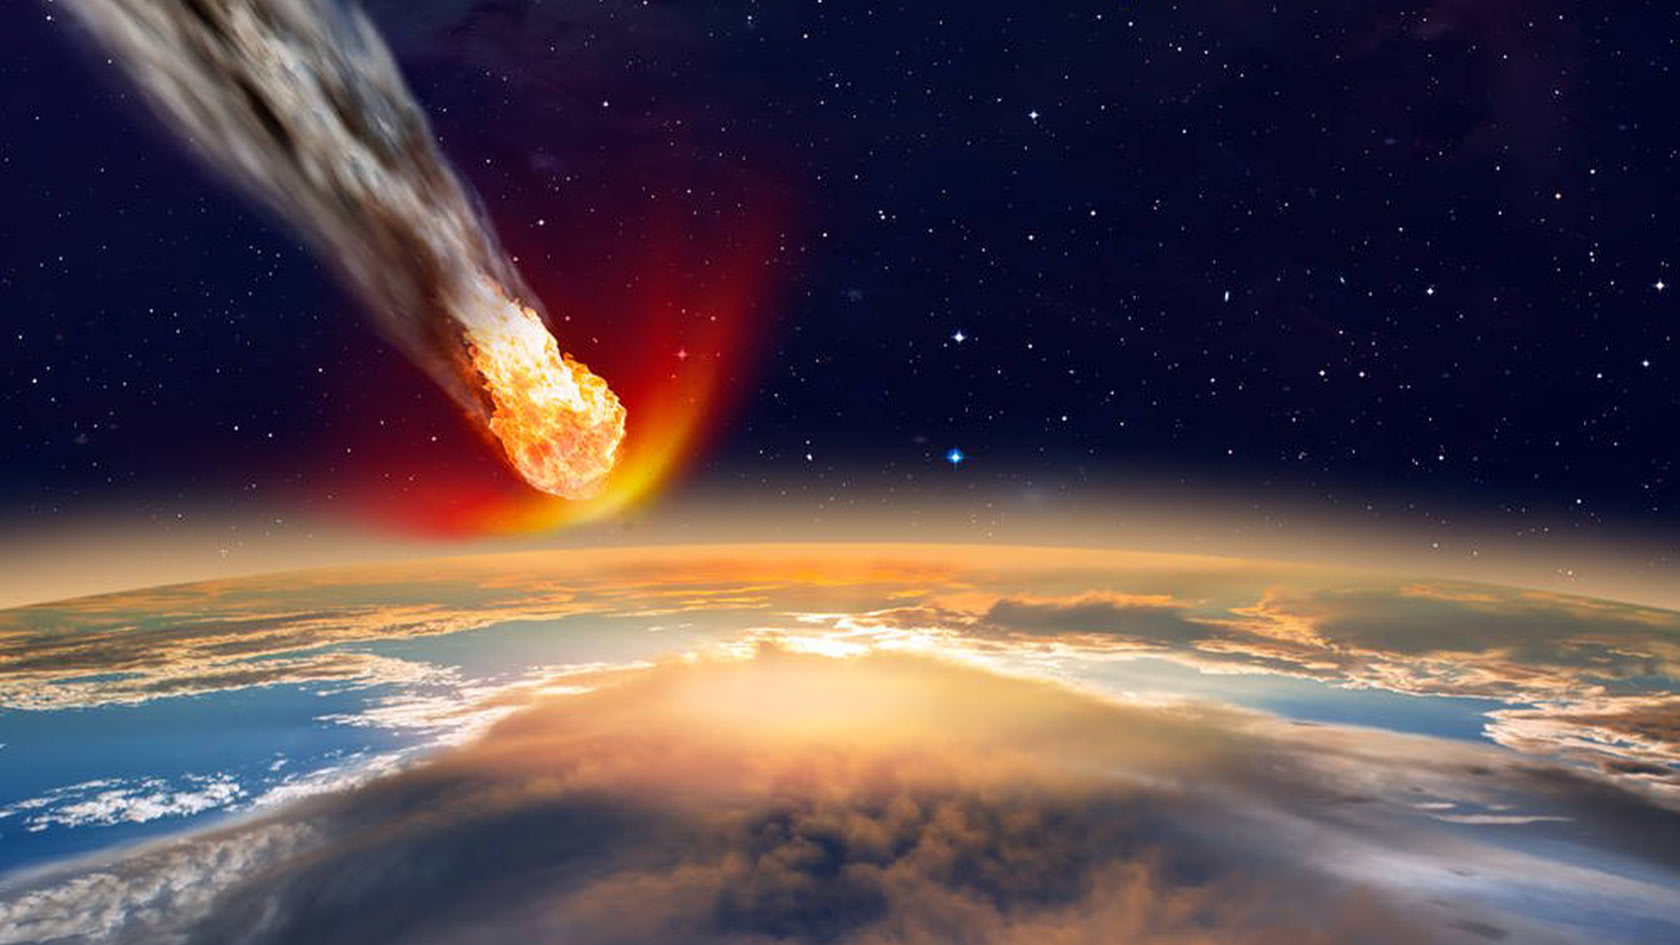 飞了64亿公里,采矿飞船回到地球!nasa:贝努小行星或碰撞地球